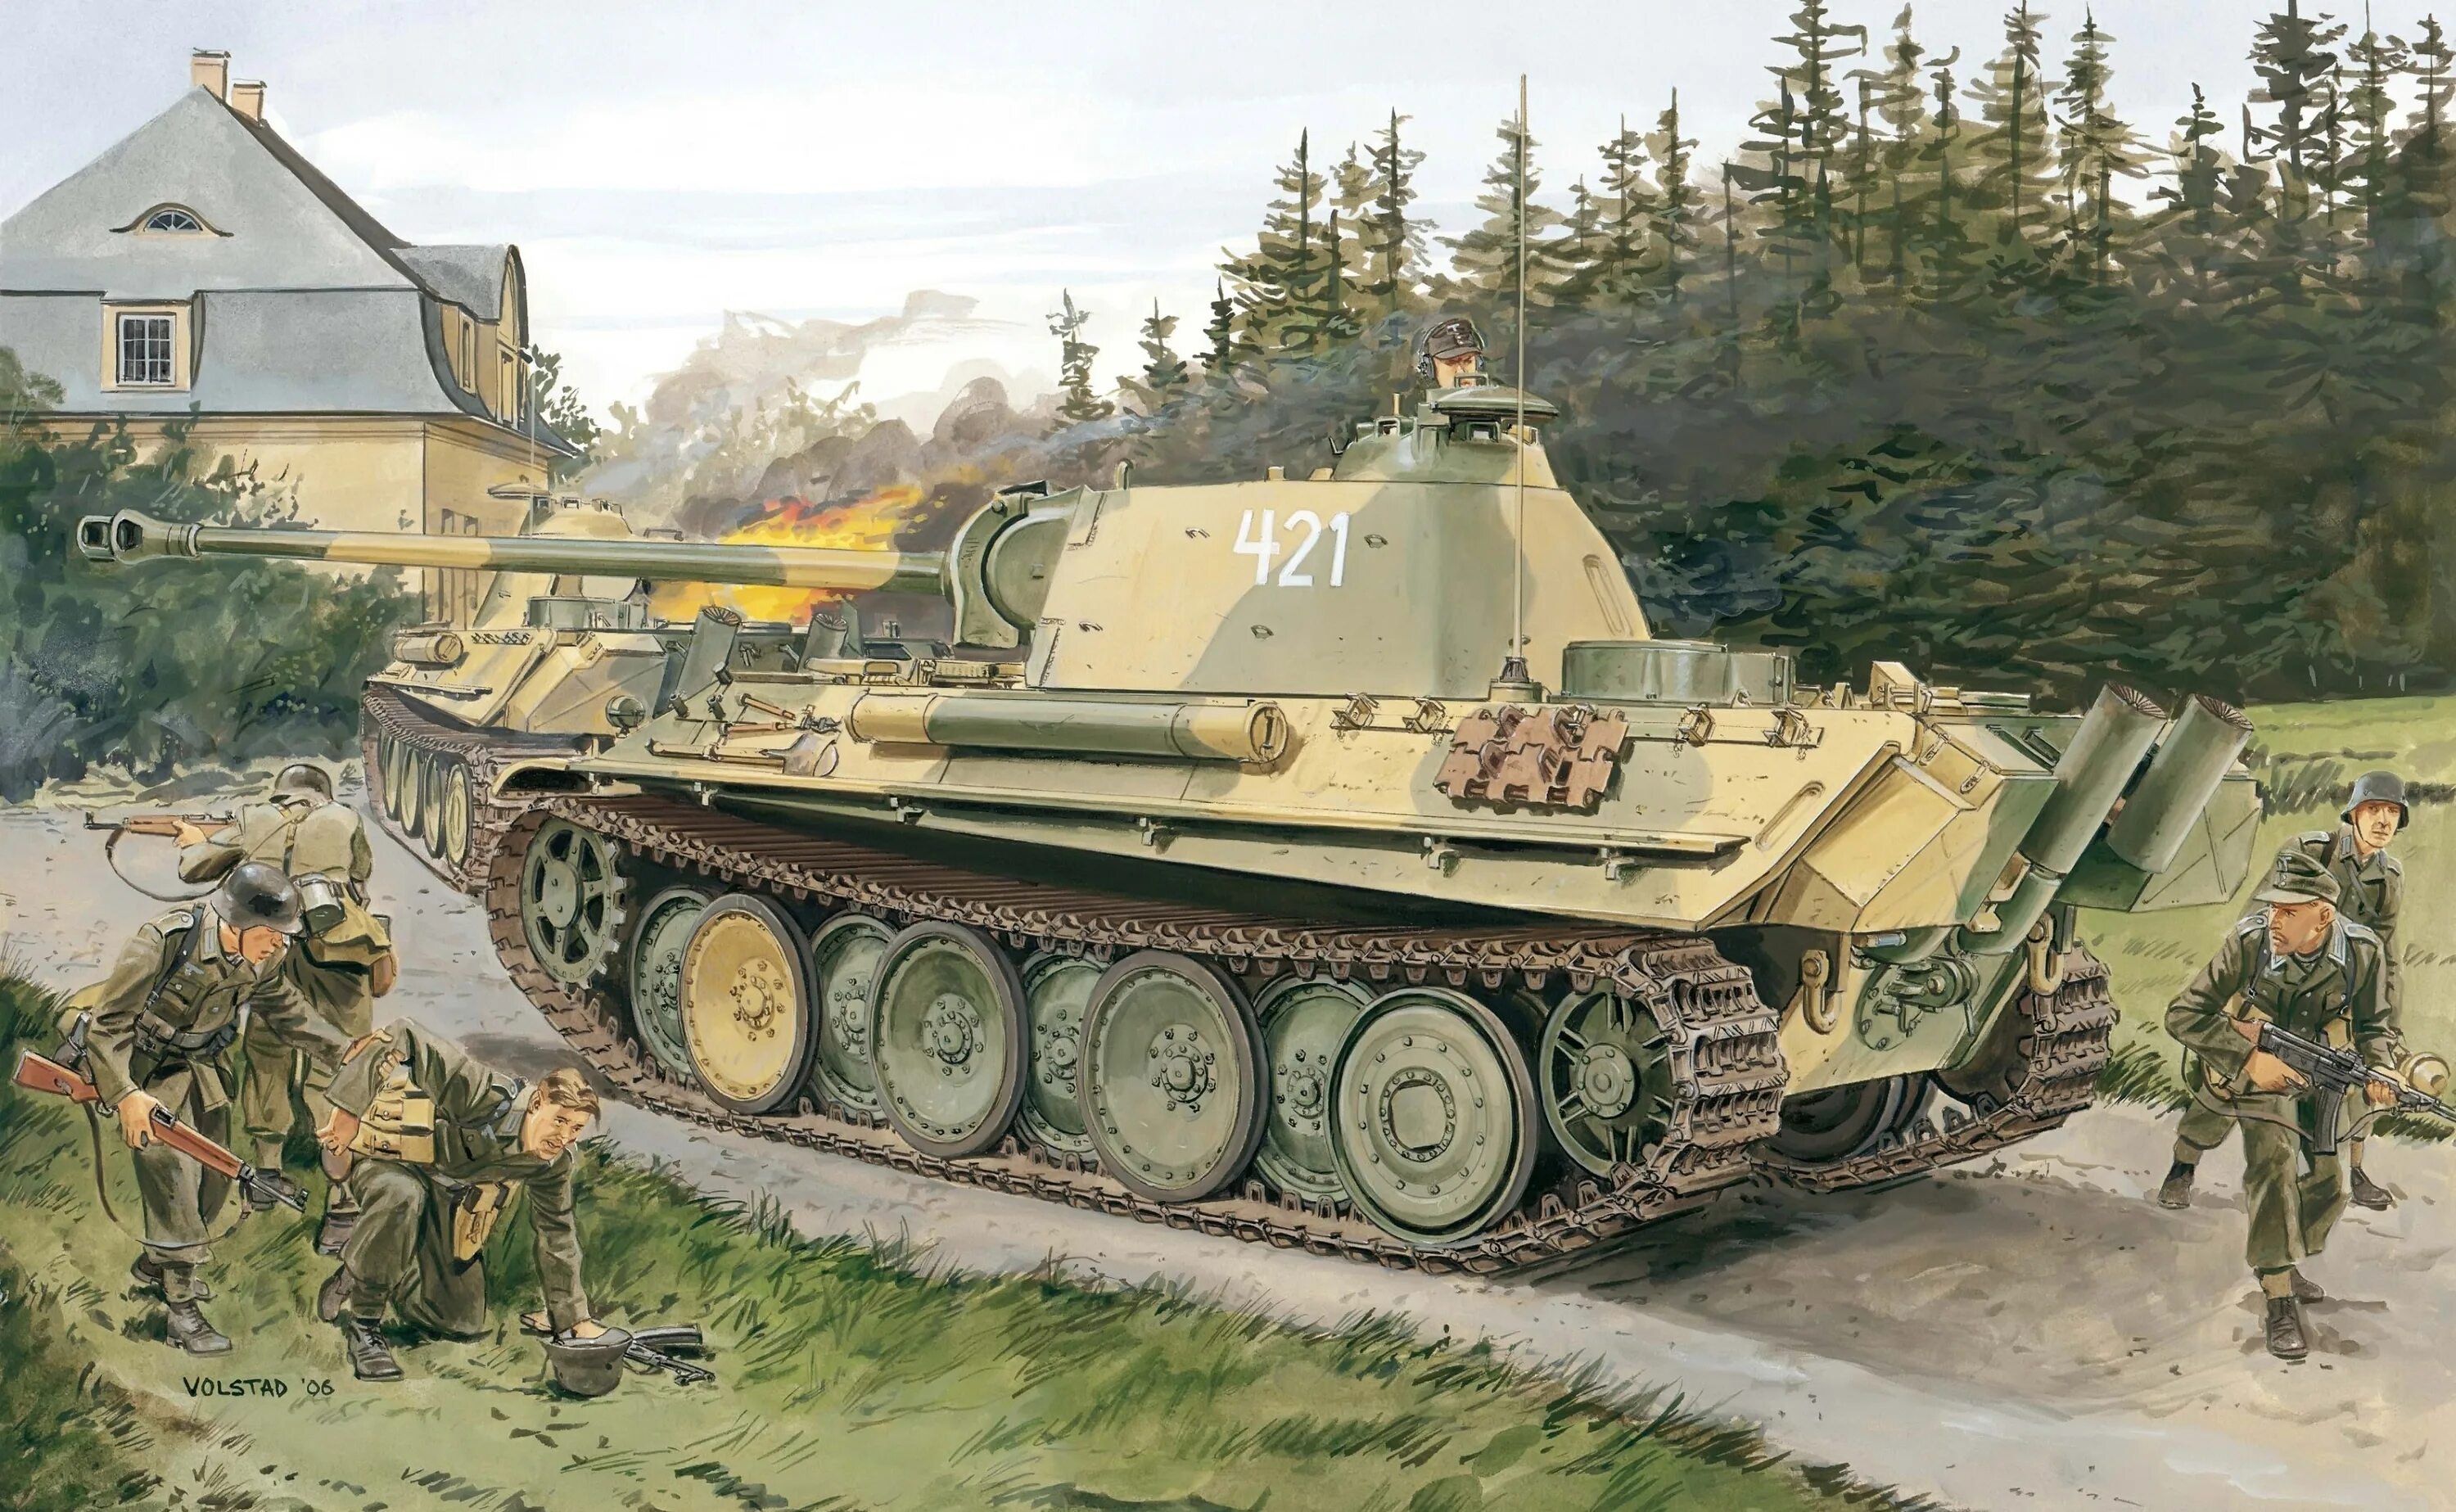 13 5 1 35. SD KFZ 171. Панцеркампфваген 5 пантера. Немецкий танк пантера второй мировой. Немецкий танк пантера 2.